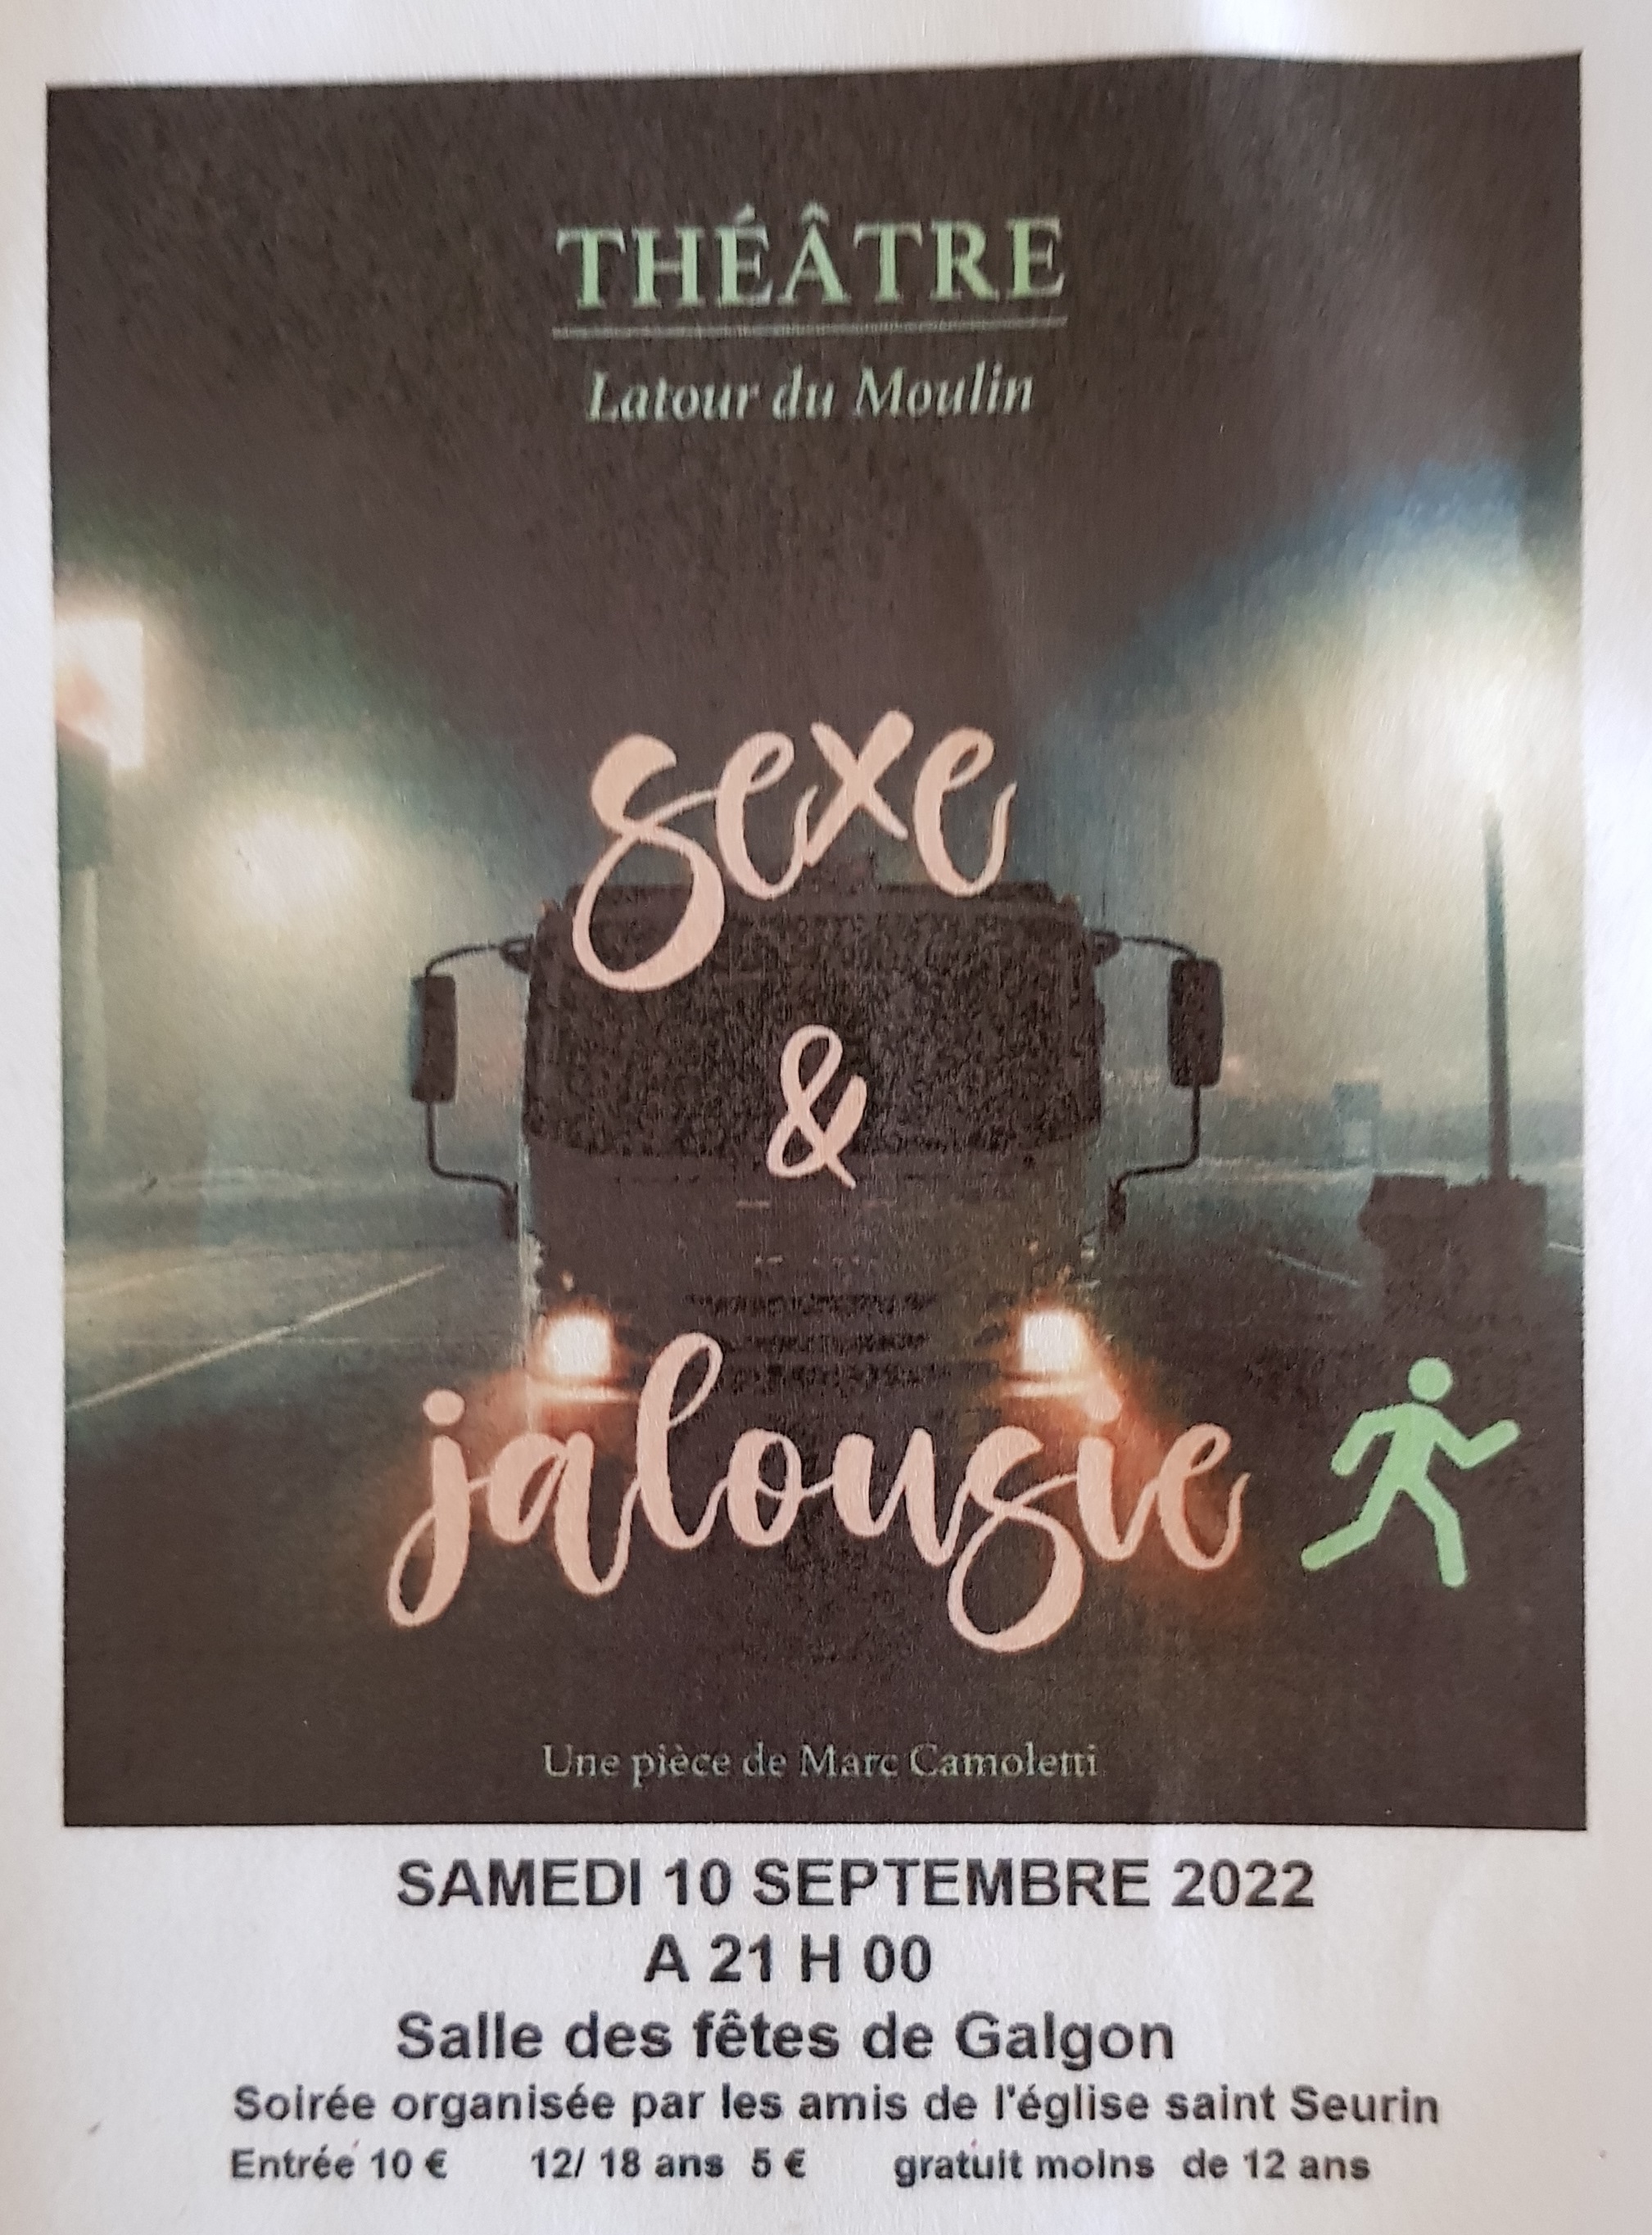 Théatre le 10 septembre à Galgon: Sexe & jalousie